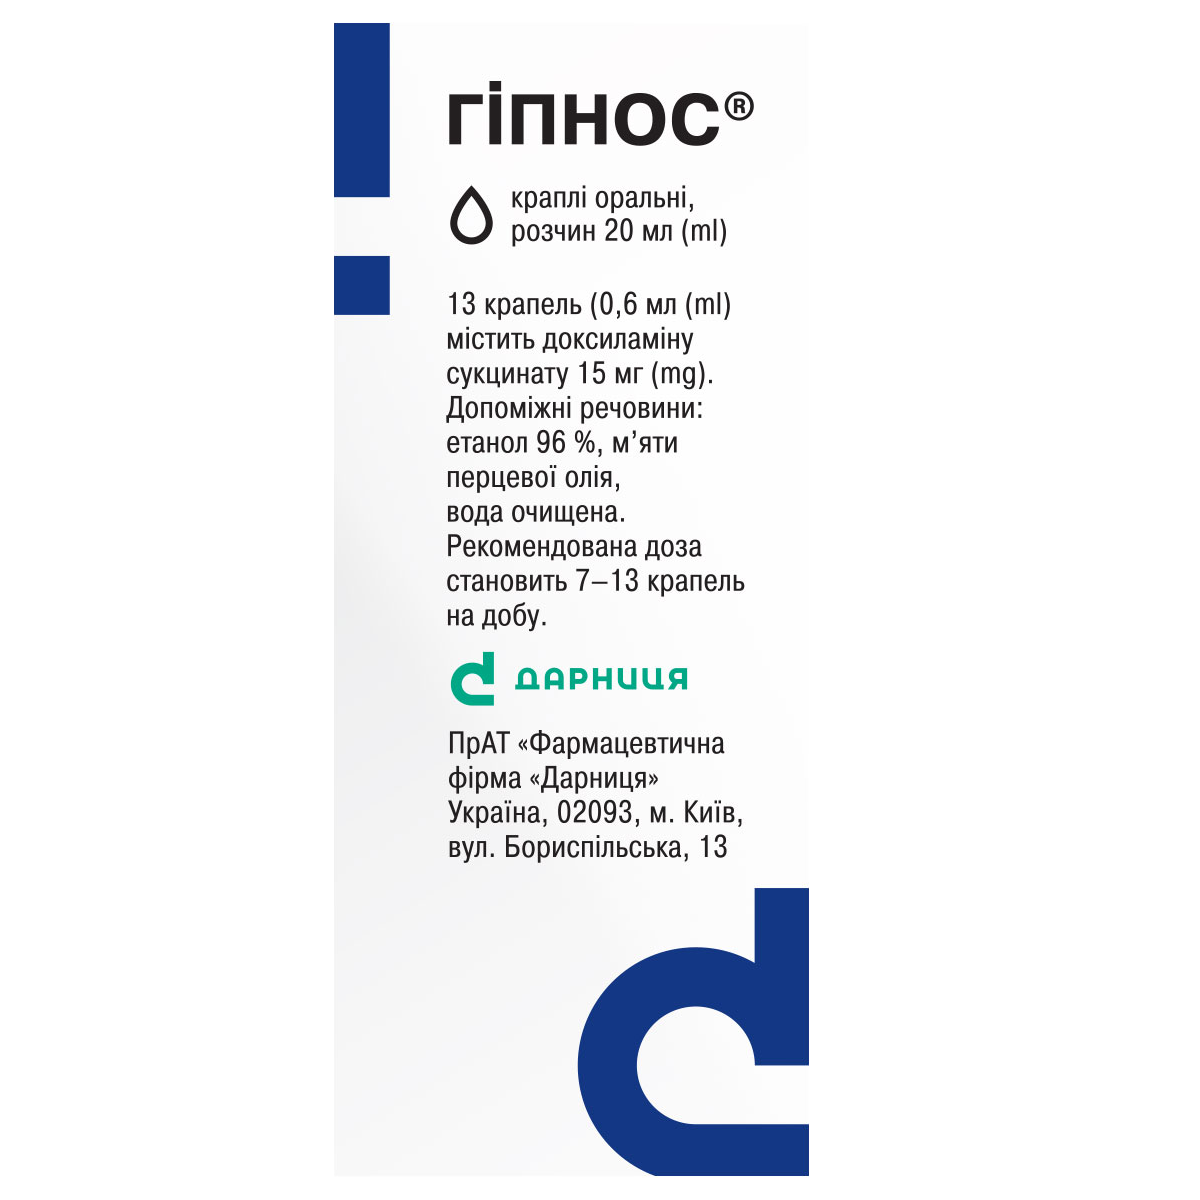 Hipnos «Darnytsia» pharmaceutical company